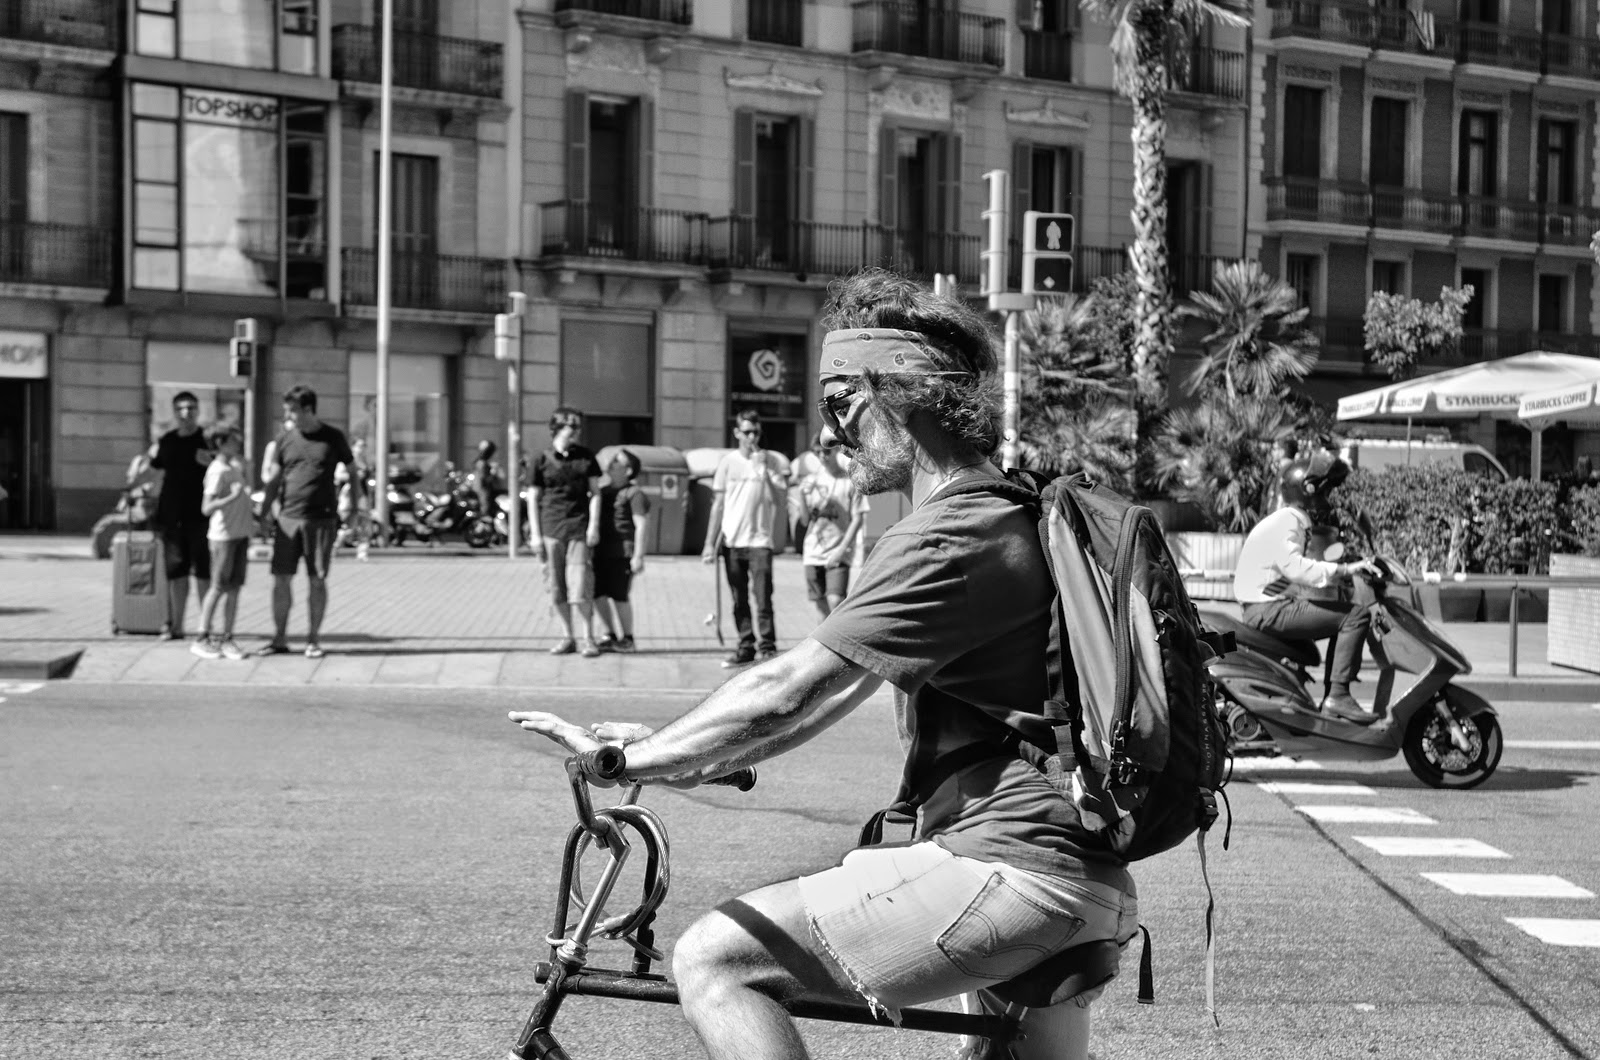 Barcelona biker [enlarge]